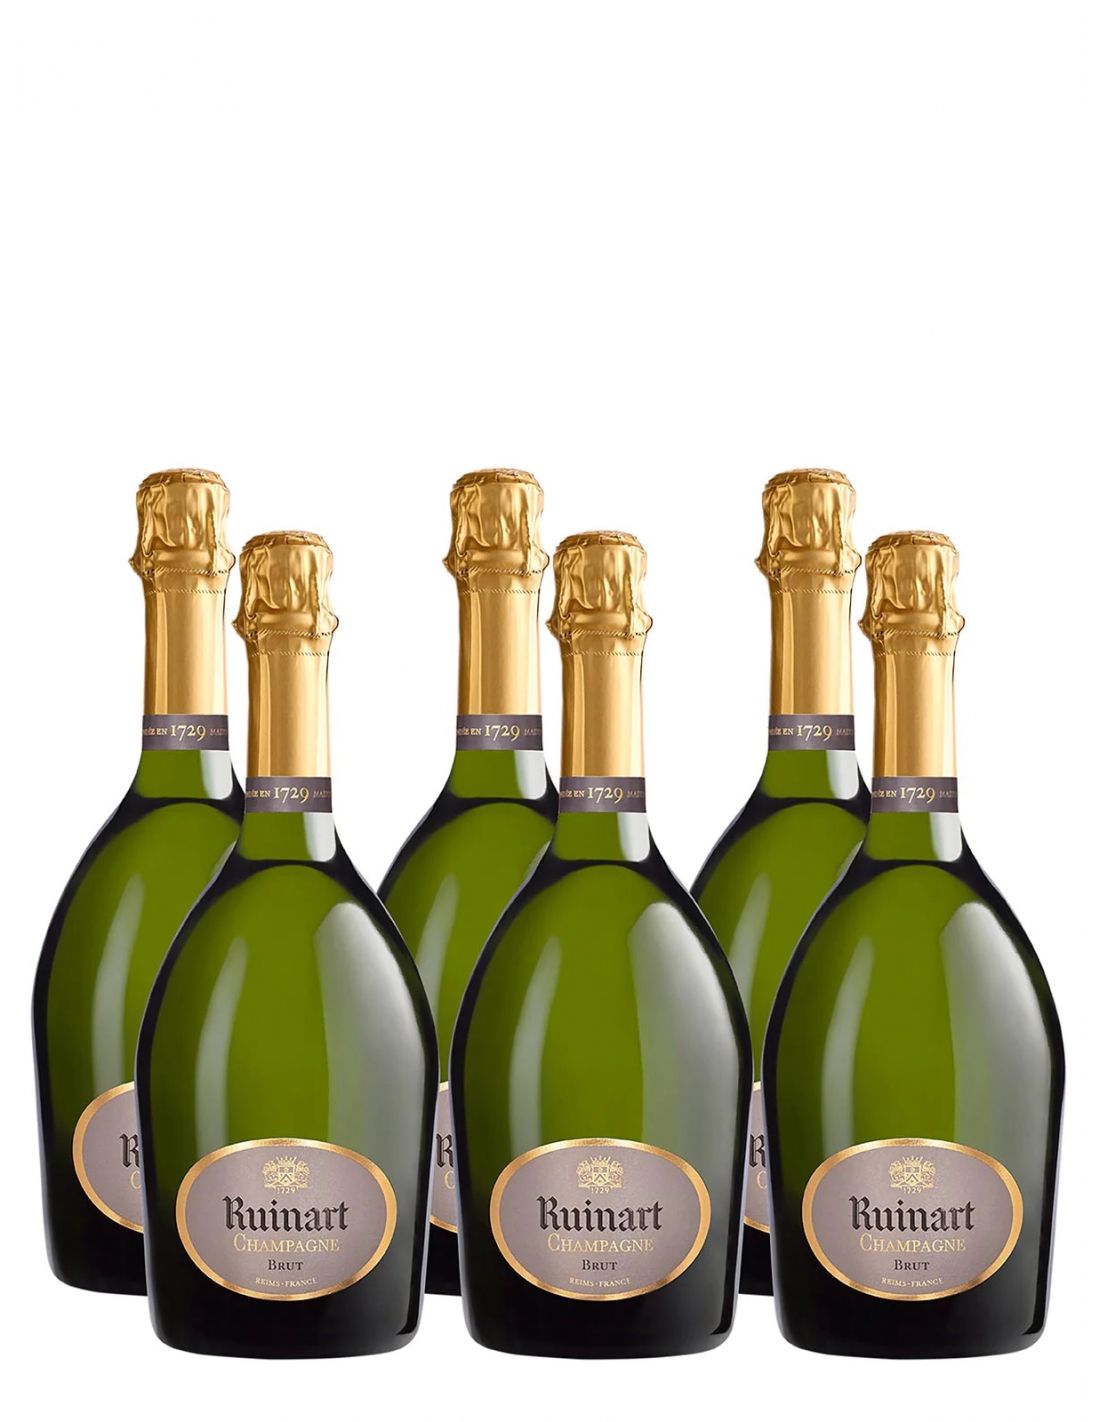 Champagne brut Tradition Contenance Bouteille (75 cl.) Qualité Brut